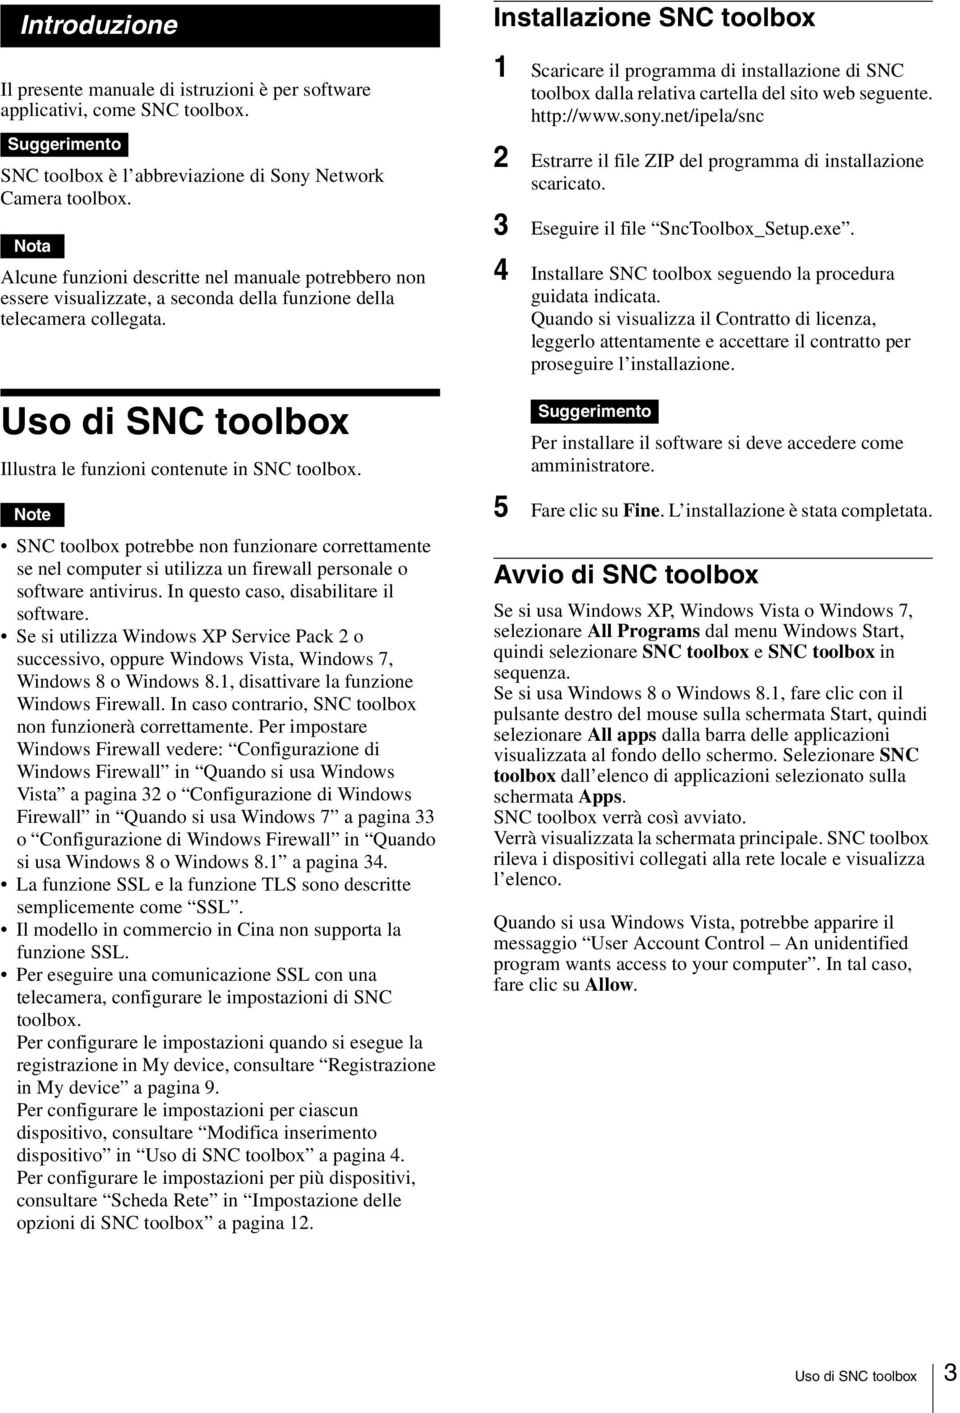 Note SNC toolbox potrebbe non funzionare correttamente se nel computer si utilizza un firewall personale o software antivirus. In questo caso, disabilitare il software.